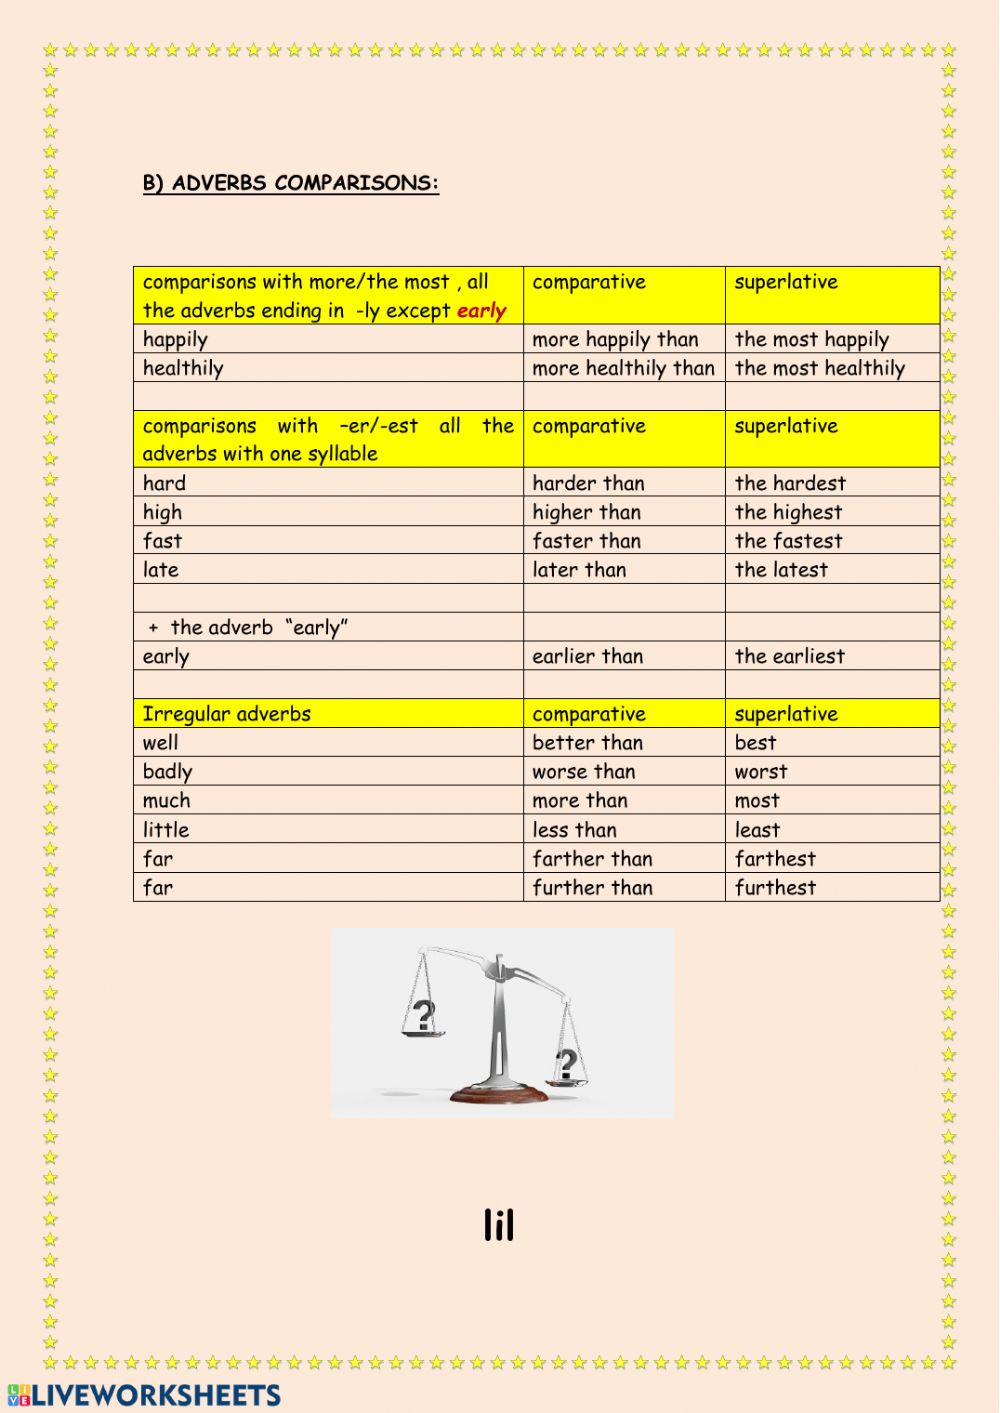 Adverbs Comparisons Worksheet